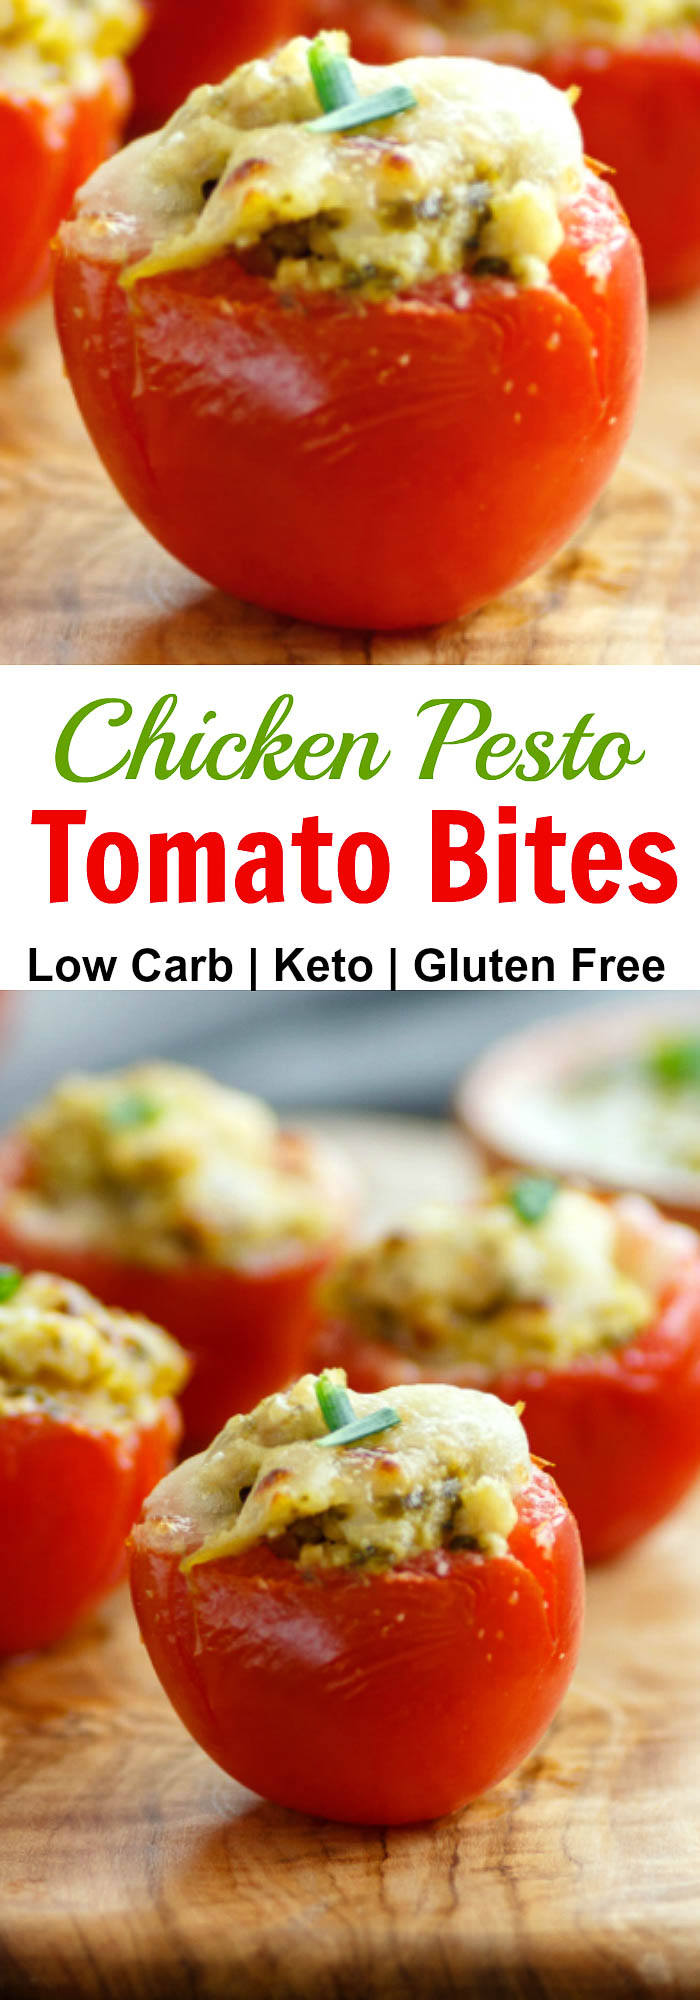 Chicken Pesto Tomato Bites Low Carb